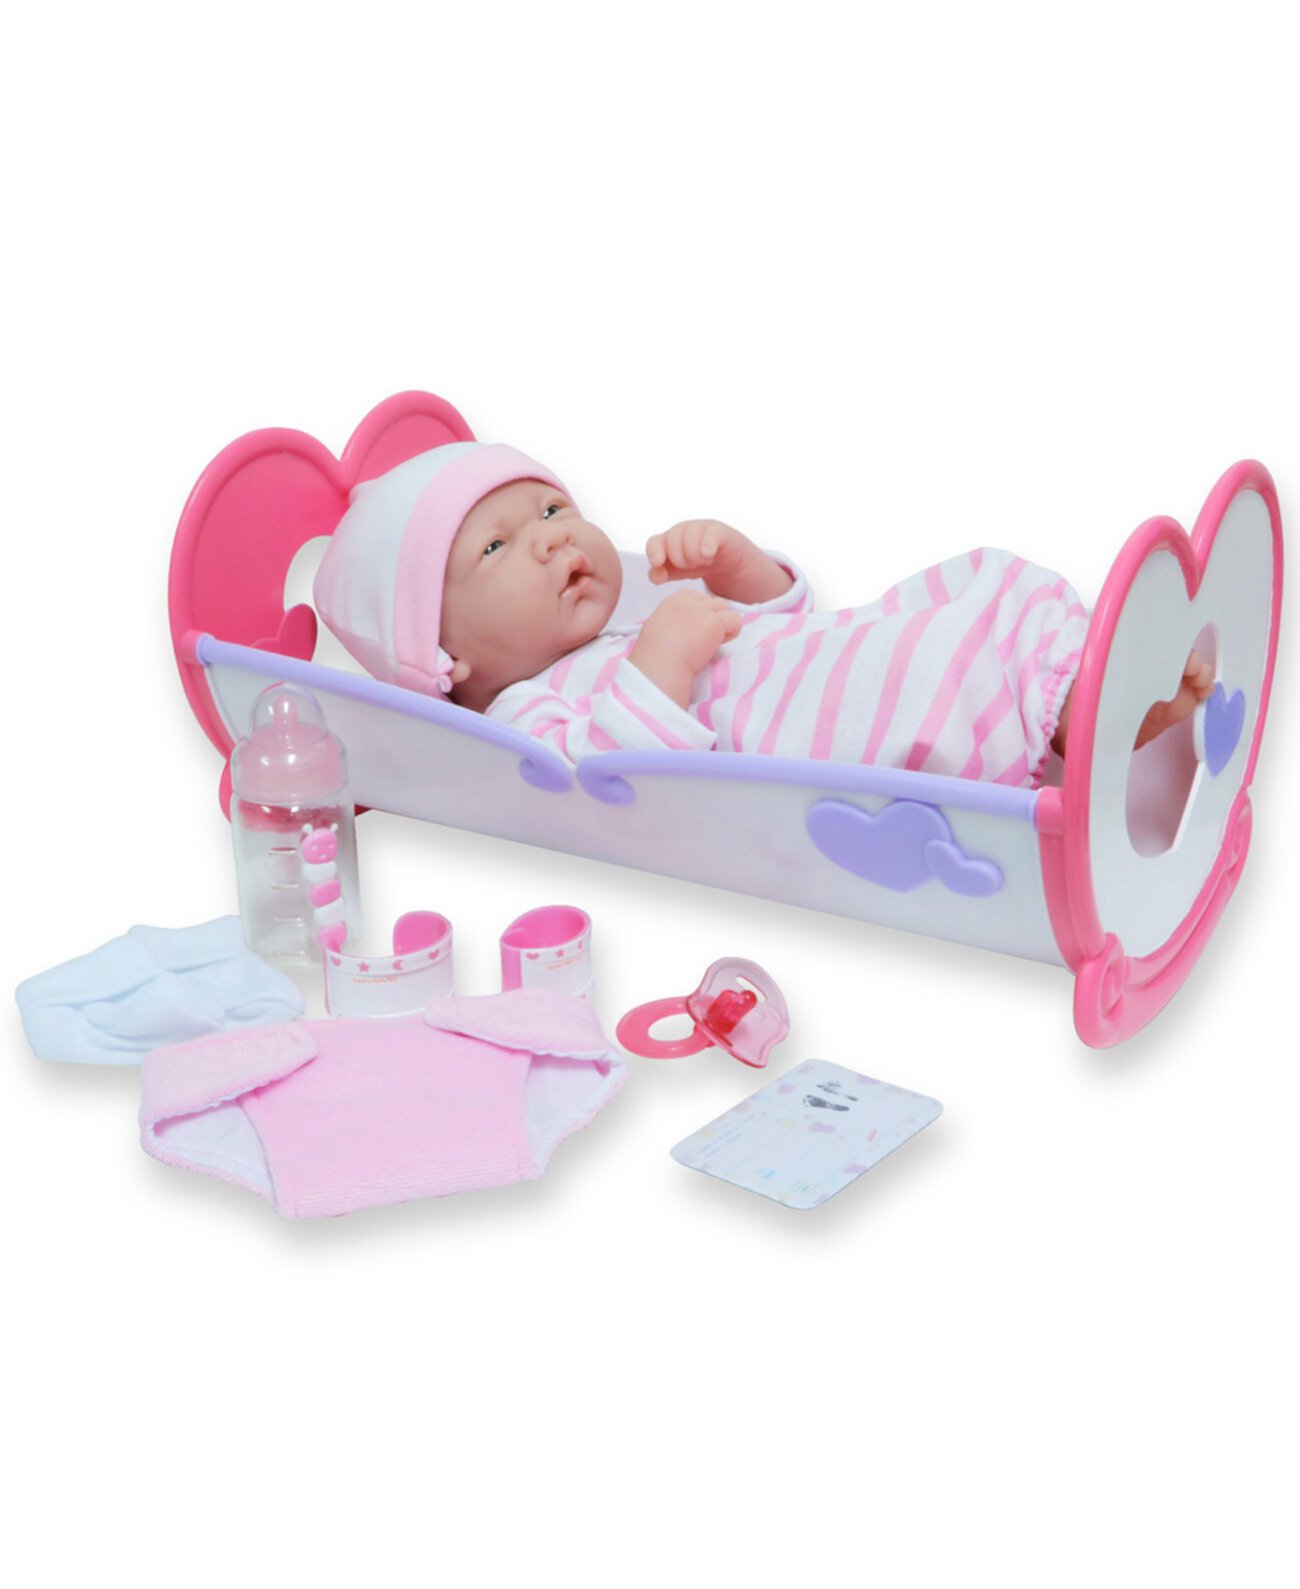 Подарочный набор для кроватки-качалки для новорожденных 14 дюймов La Newborn, 11 предметов JC Toys